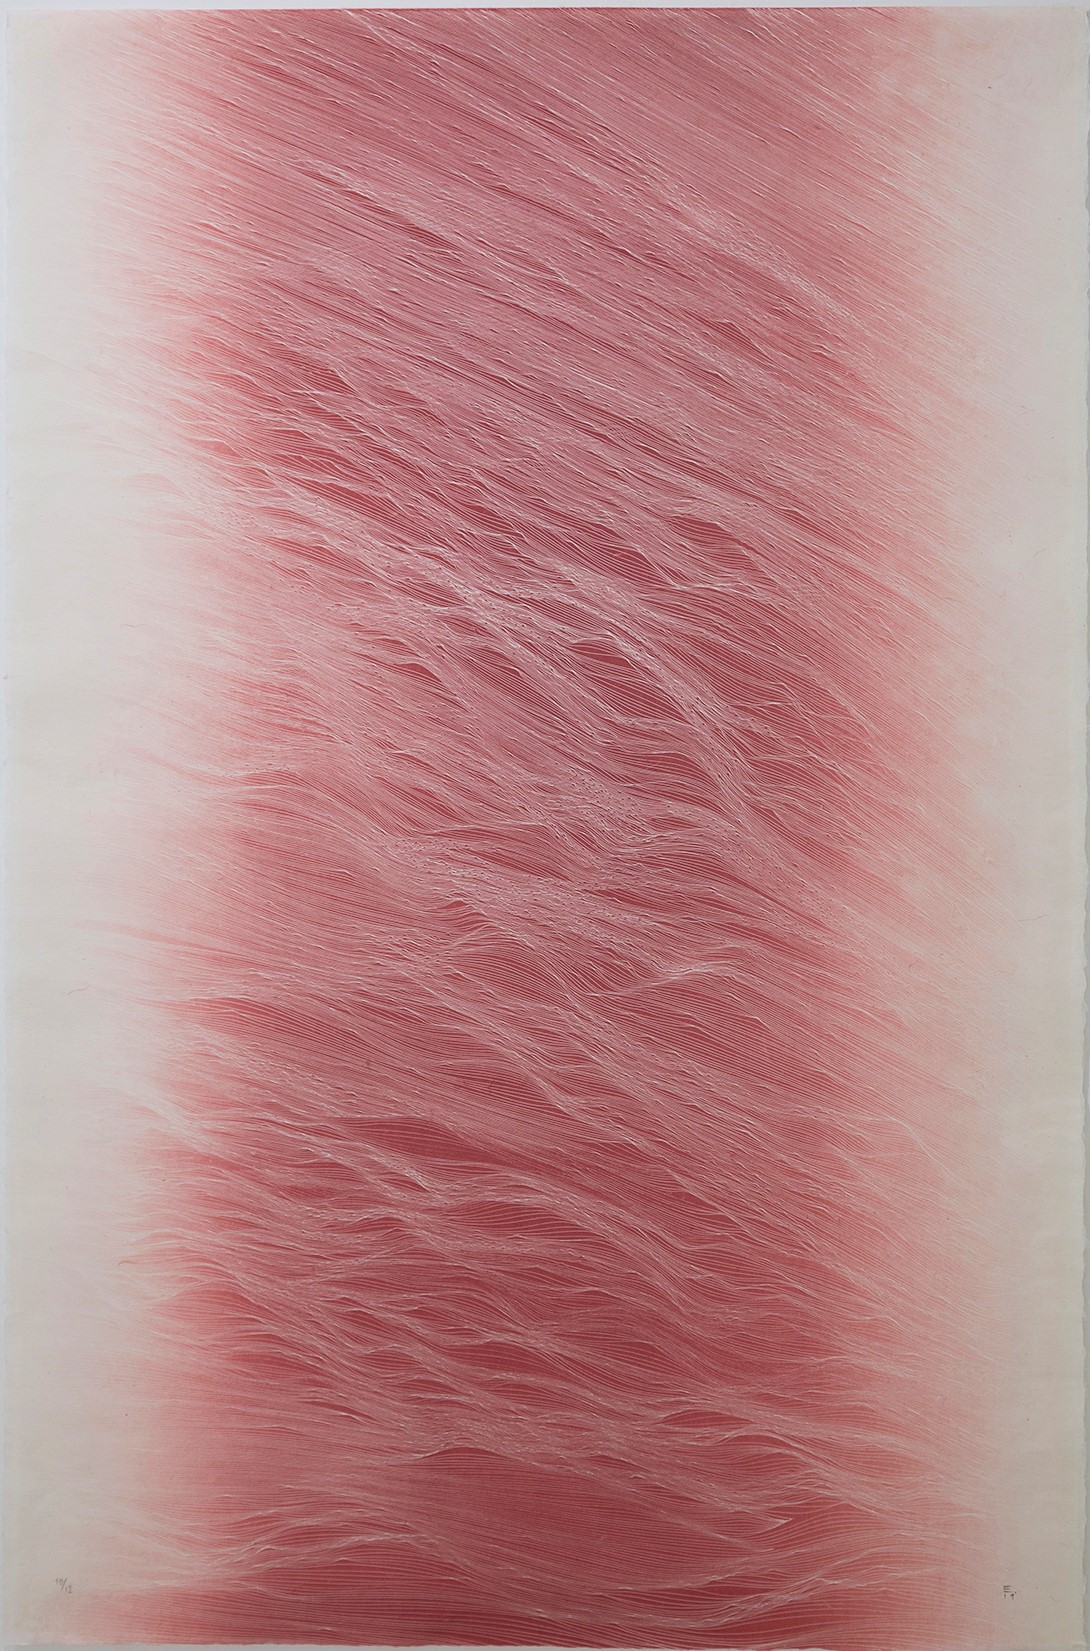 JE Changes red 2019 Ed .12 95x65 cm Etching on Washi Awagami Kozo natural 80 gr paper Estampa Pigment Gallery Galería de Arte en Barcelona Changes Red. Edición de 12